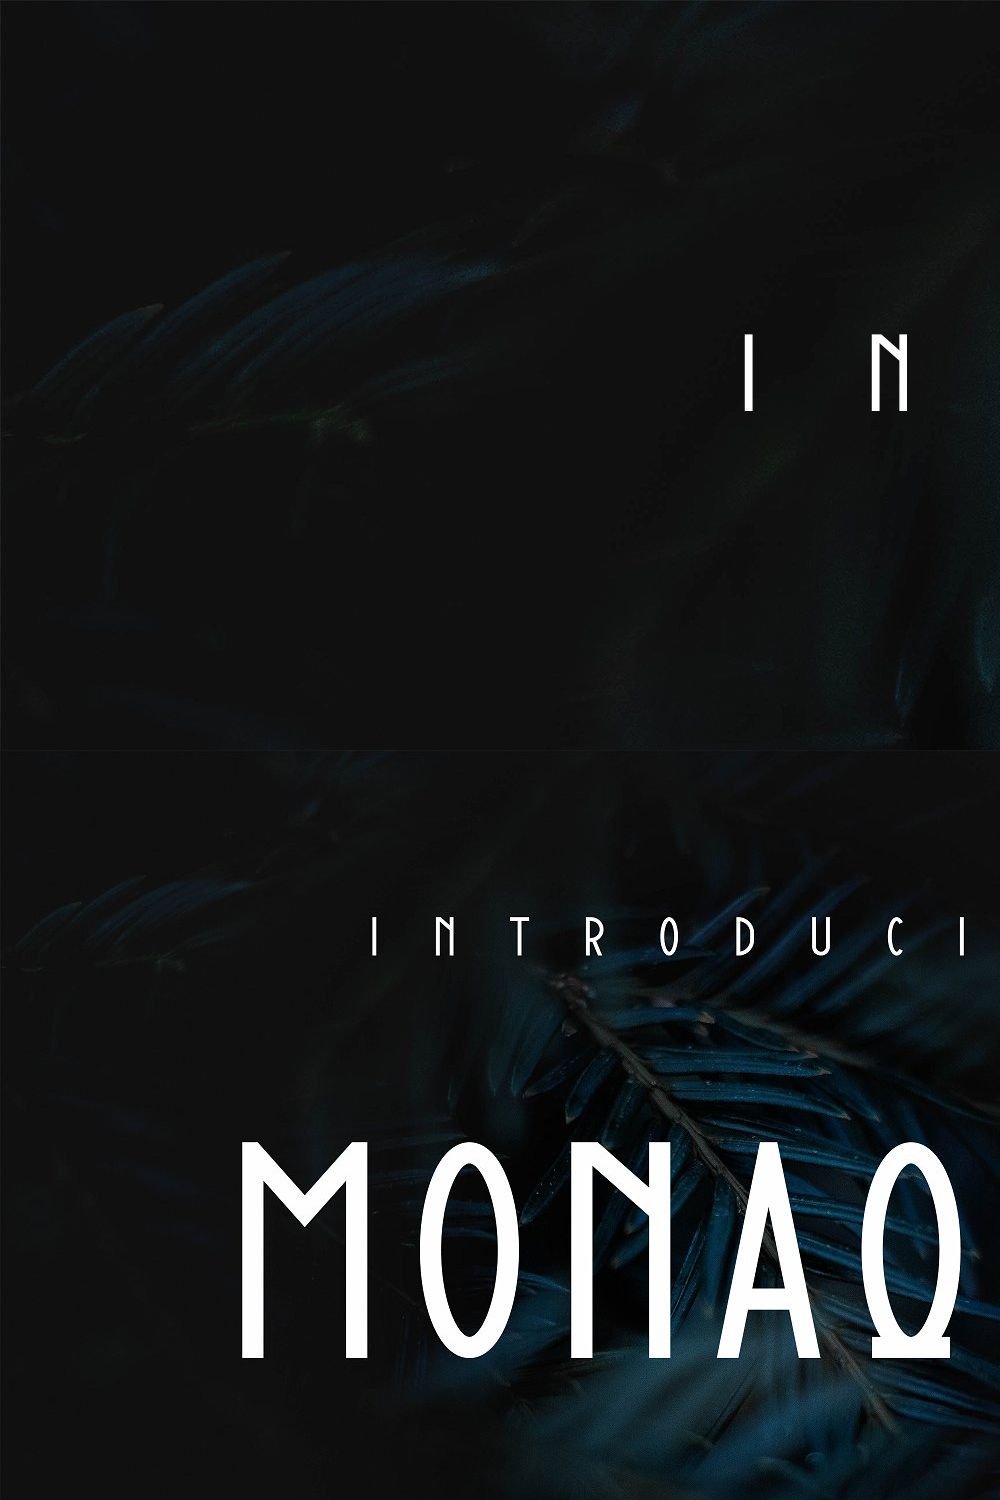 Monaque pinterest preview image.